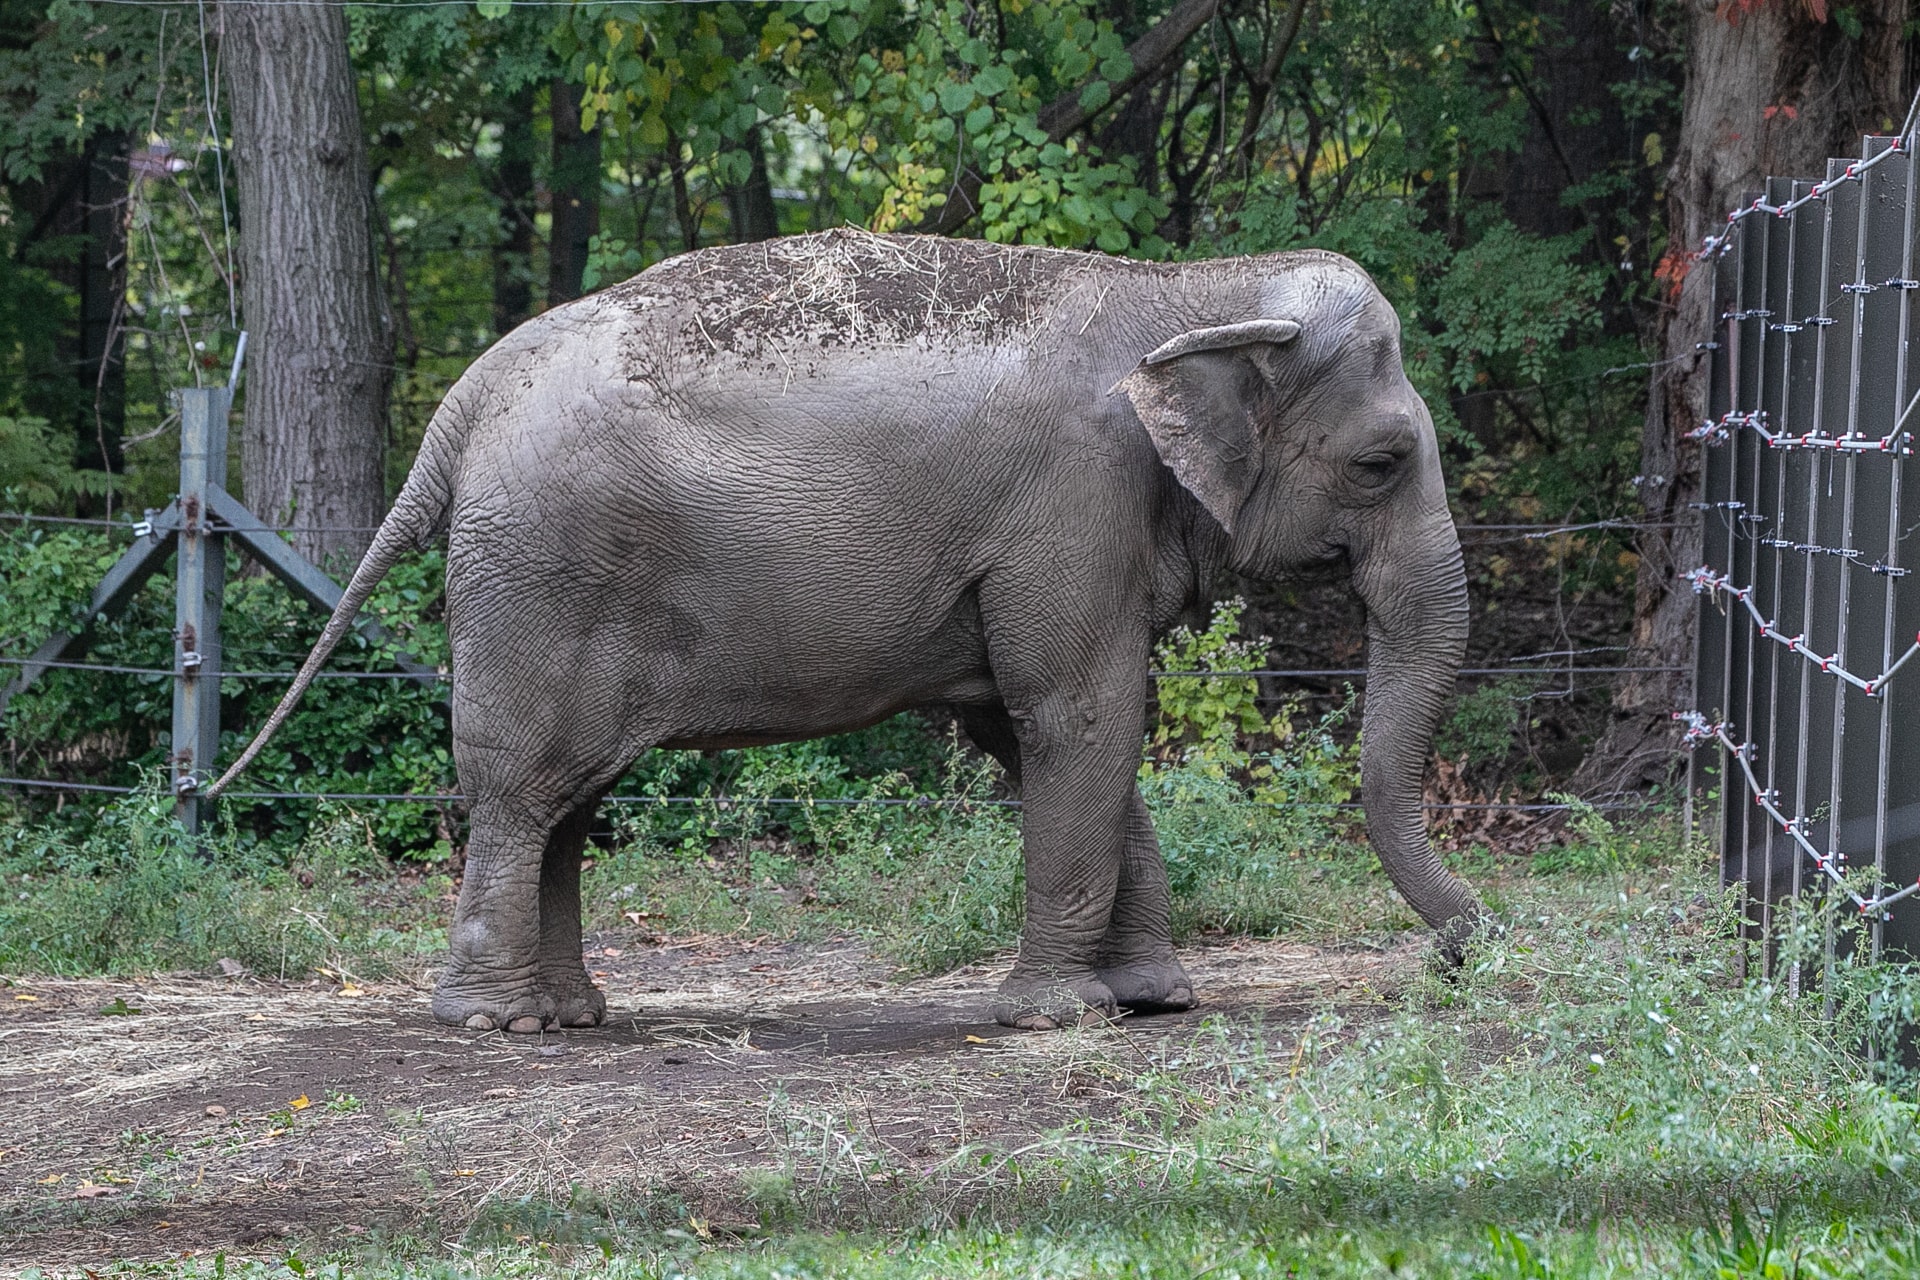 Happy de olifant is helemaal niet blij